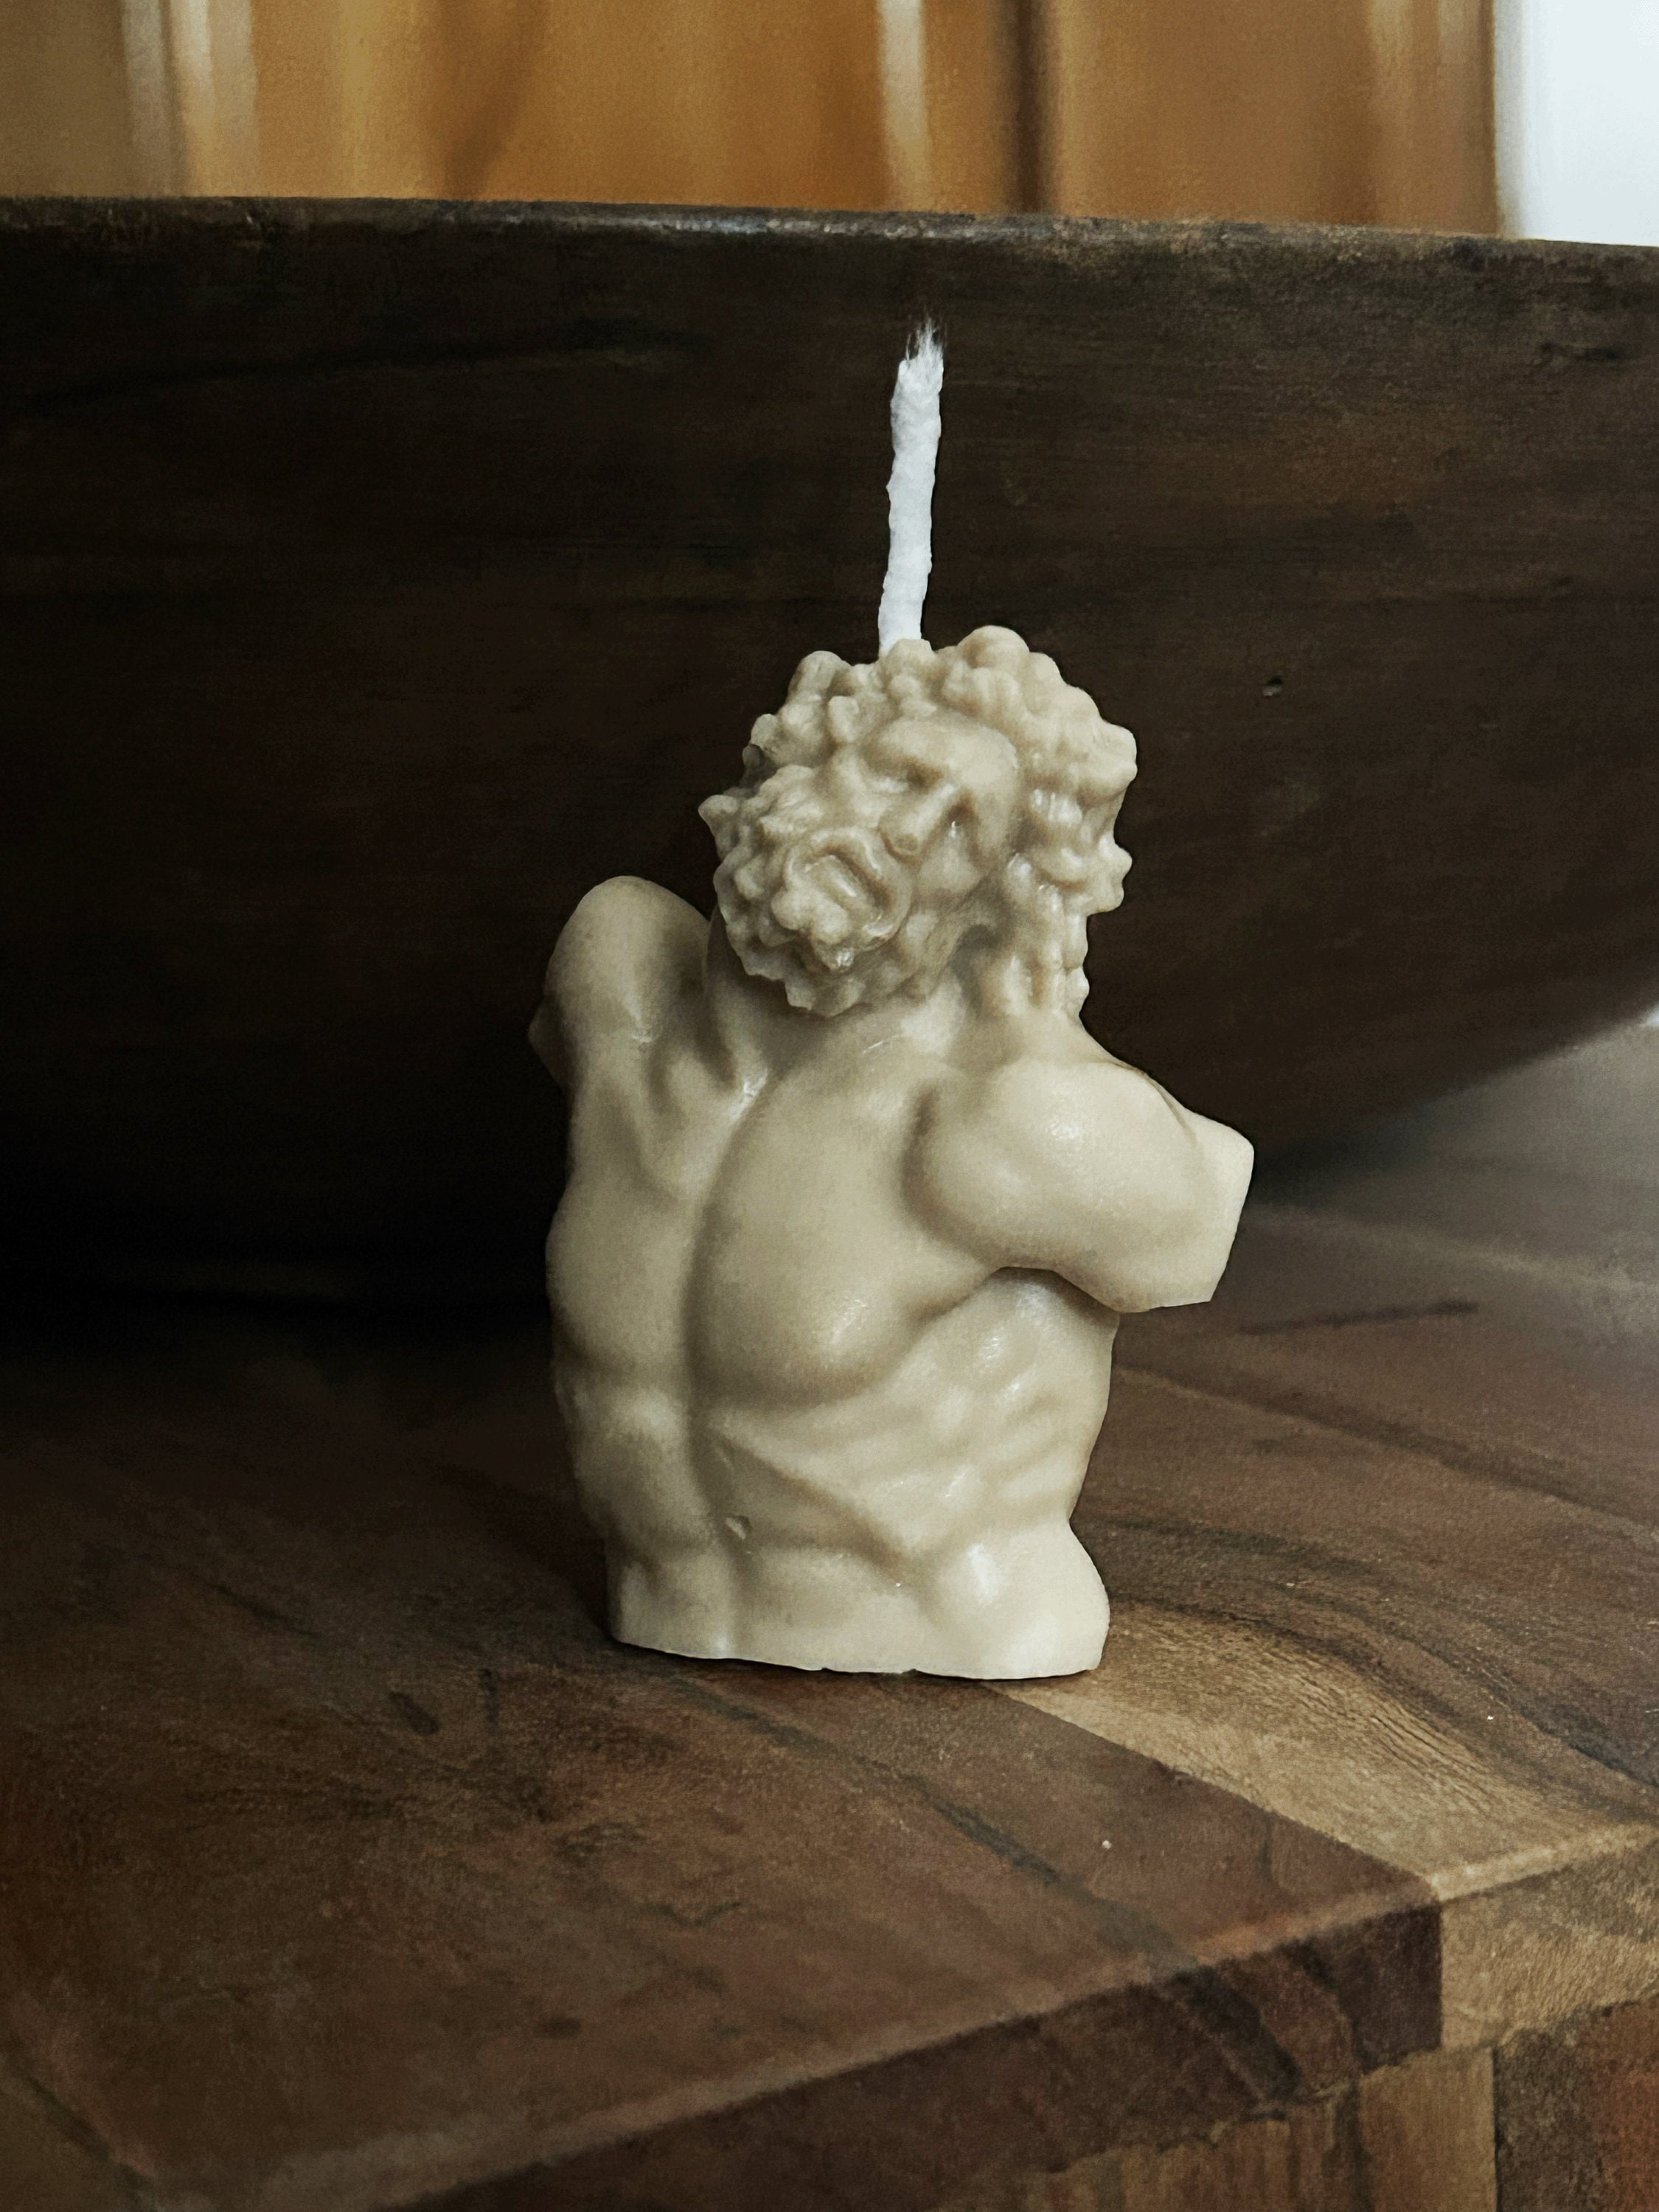 Griechische Deko – Kerzen und … – Bild kaufen – 13942121 ❘ living4media